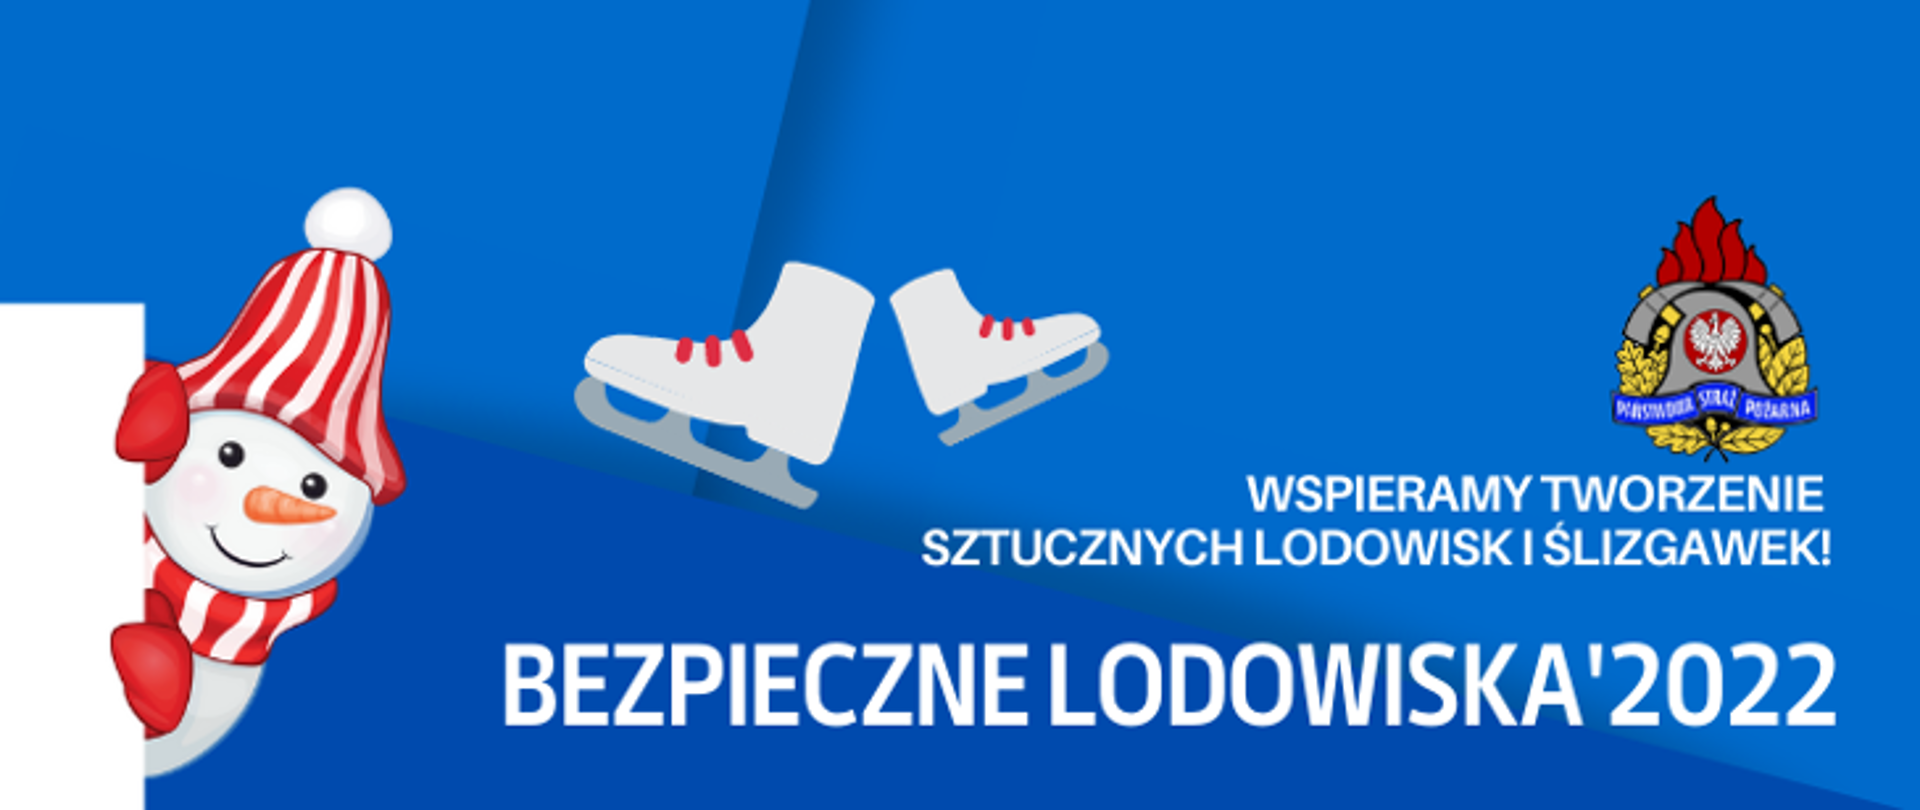 Biały napis "Wspieramy tworzenie sztucznych lodowisk i ślizgawek. Bezpieczne Lodowiska 2022" na niebieskim tle. Z lewej strony bałwan, po środku łyżwy, po prawej logo PSP